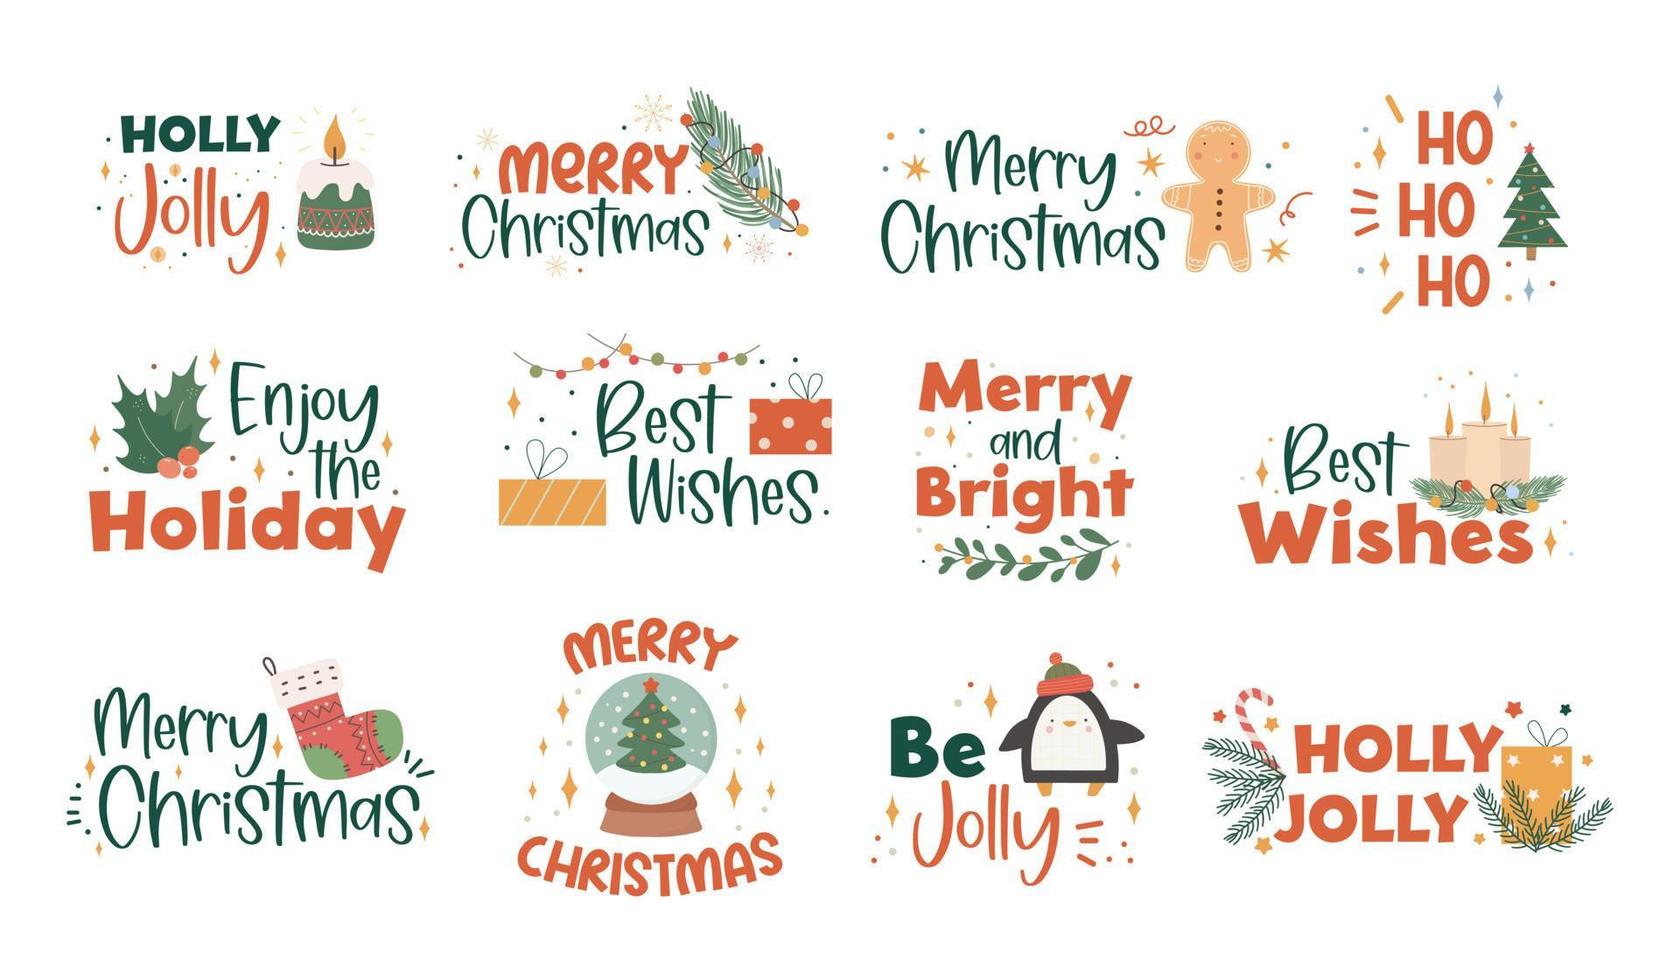 verzameling kerst handgeschreven letters met handgetekende kerstversieringen - hulstbladeren, lichte slinger, kaarsen, gebreide sokken en geschenken. feestelijke kleurrijke zinnen. vector